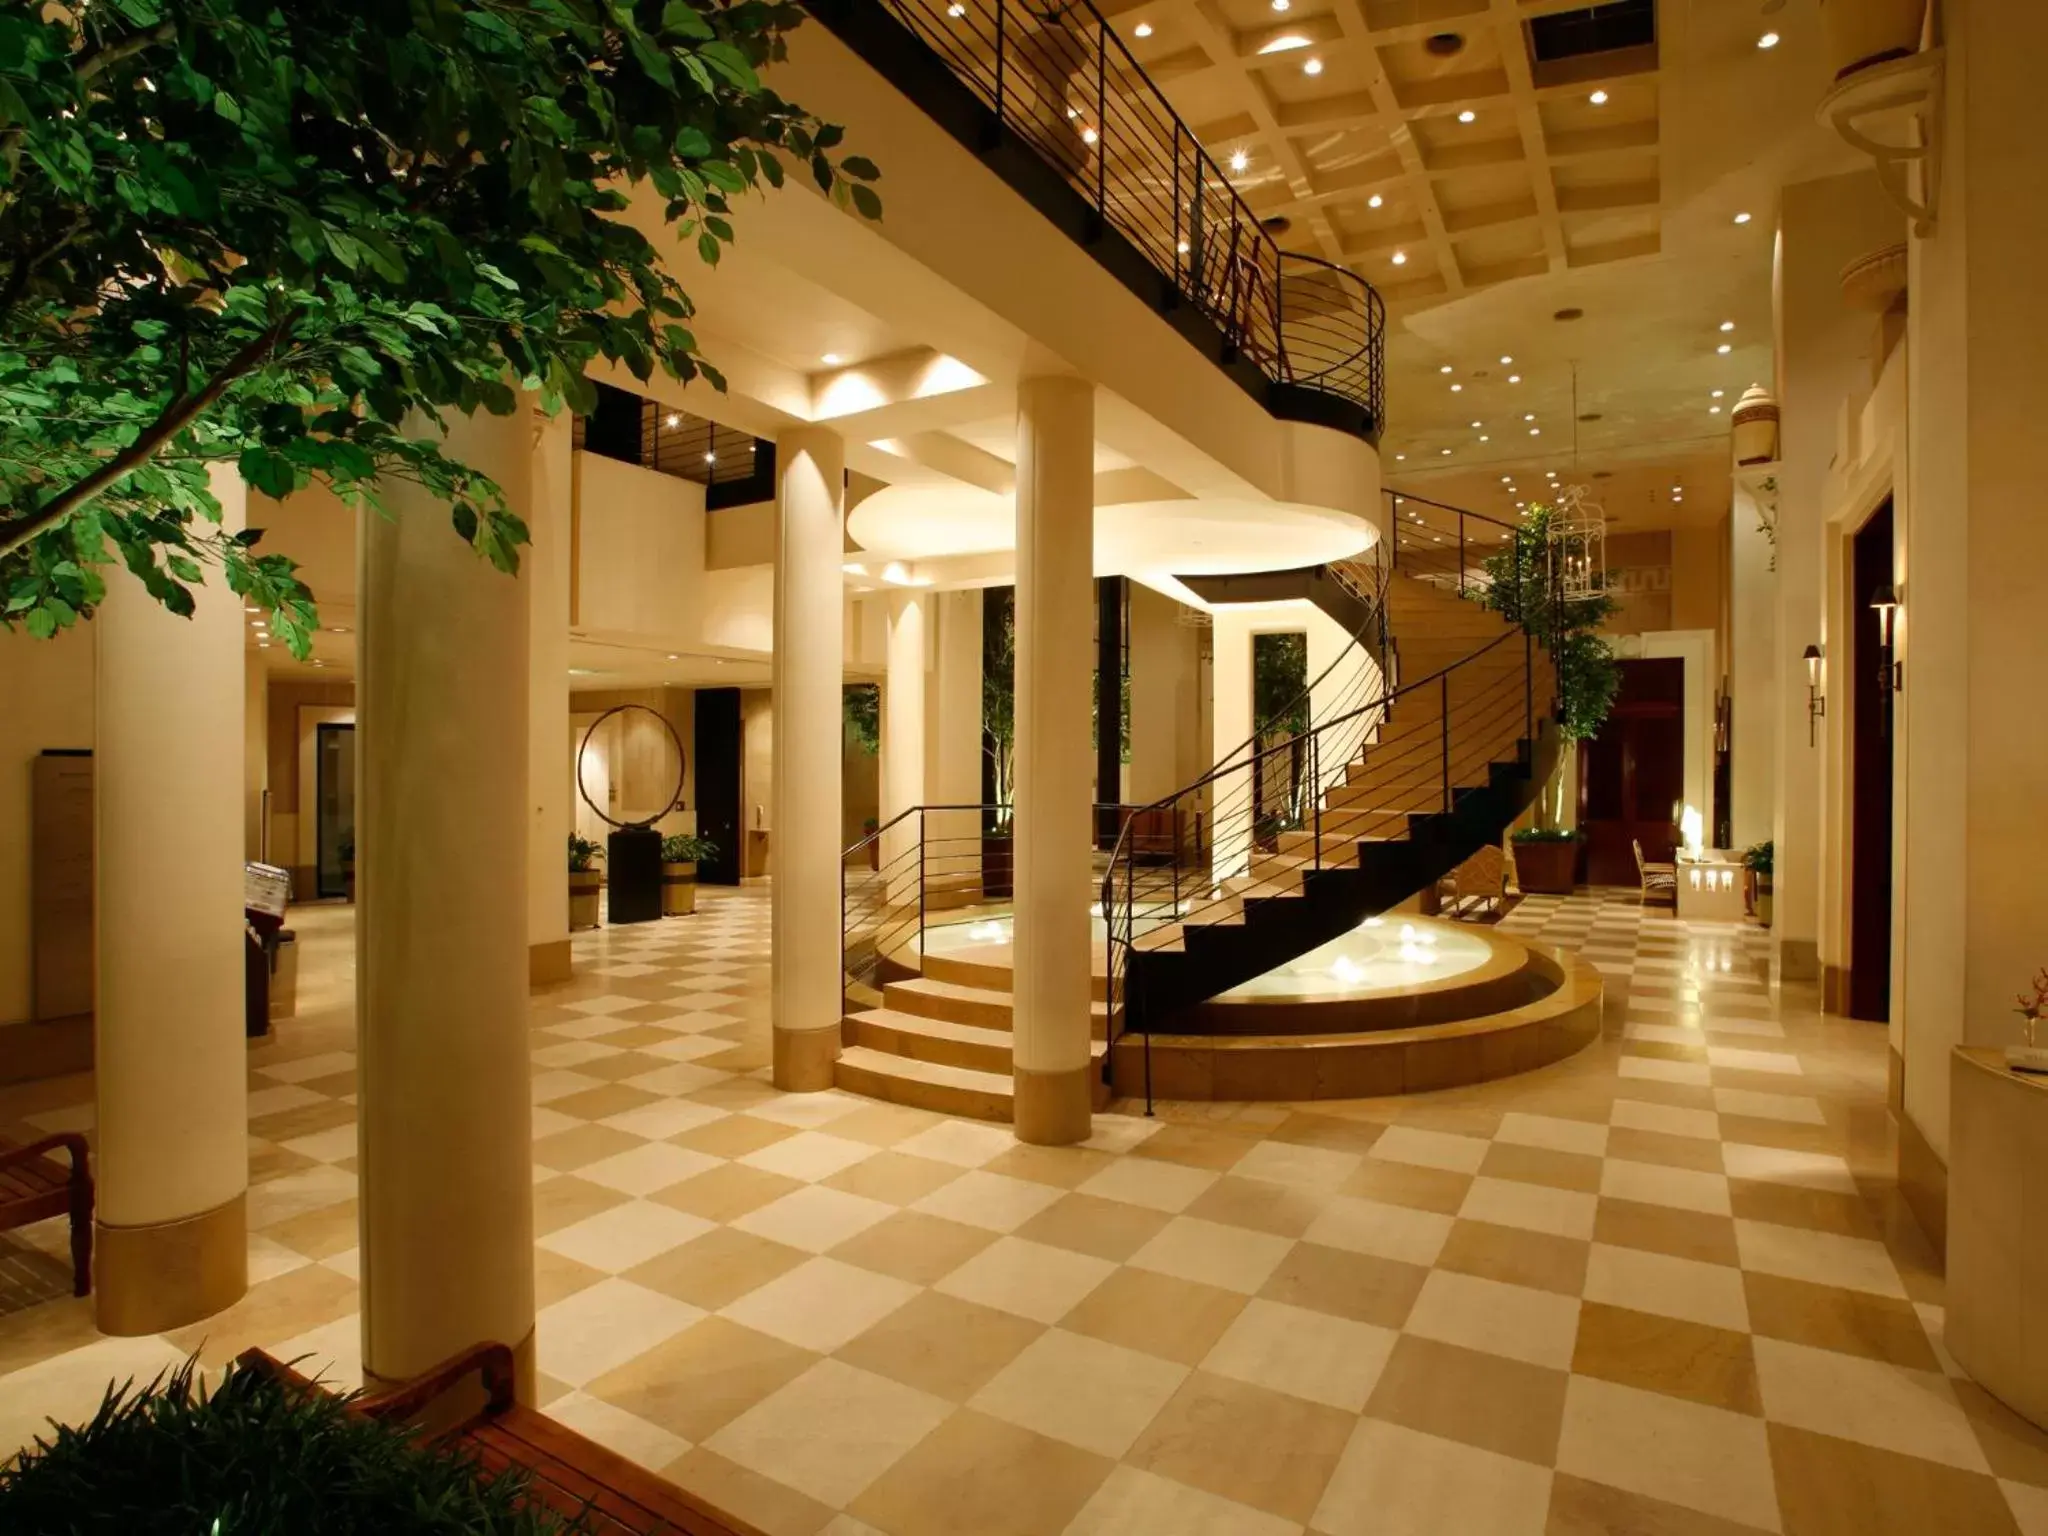 Lobby or reception, Lobby/Reception in Hotel Nikko Kanazawa